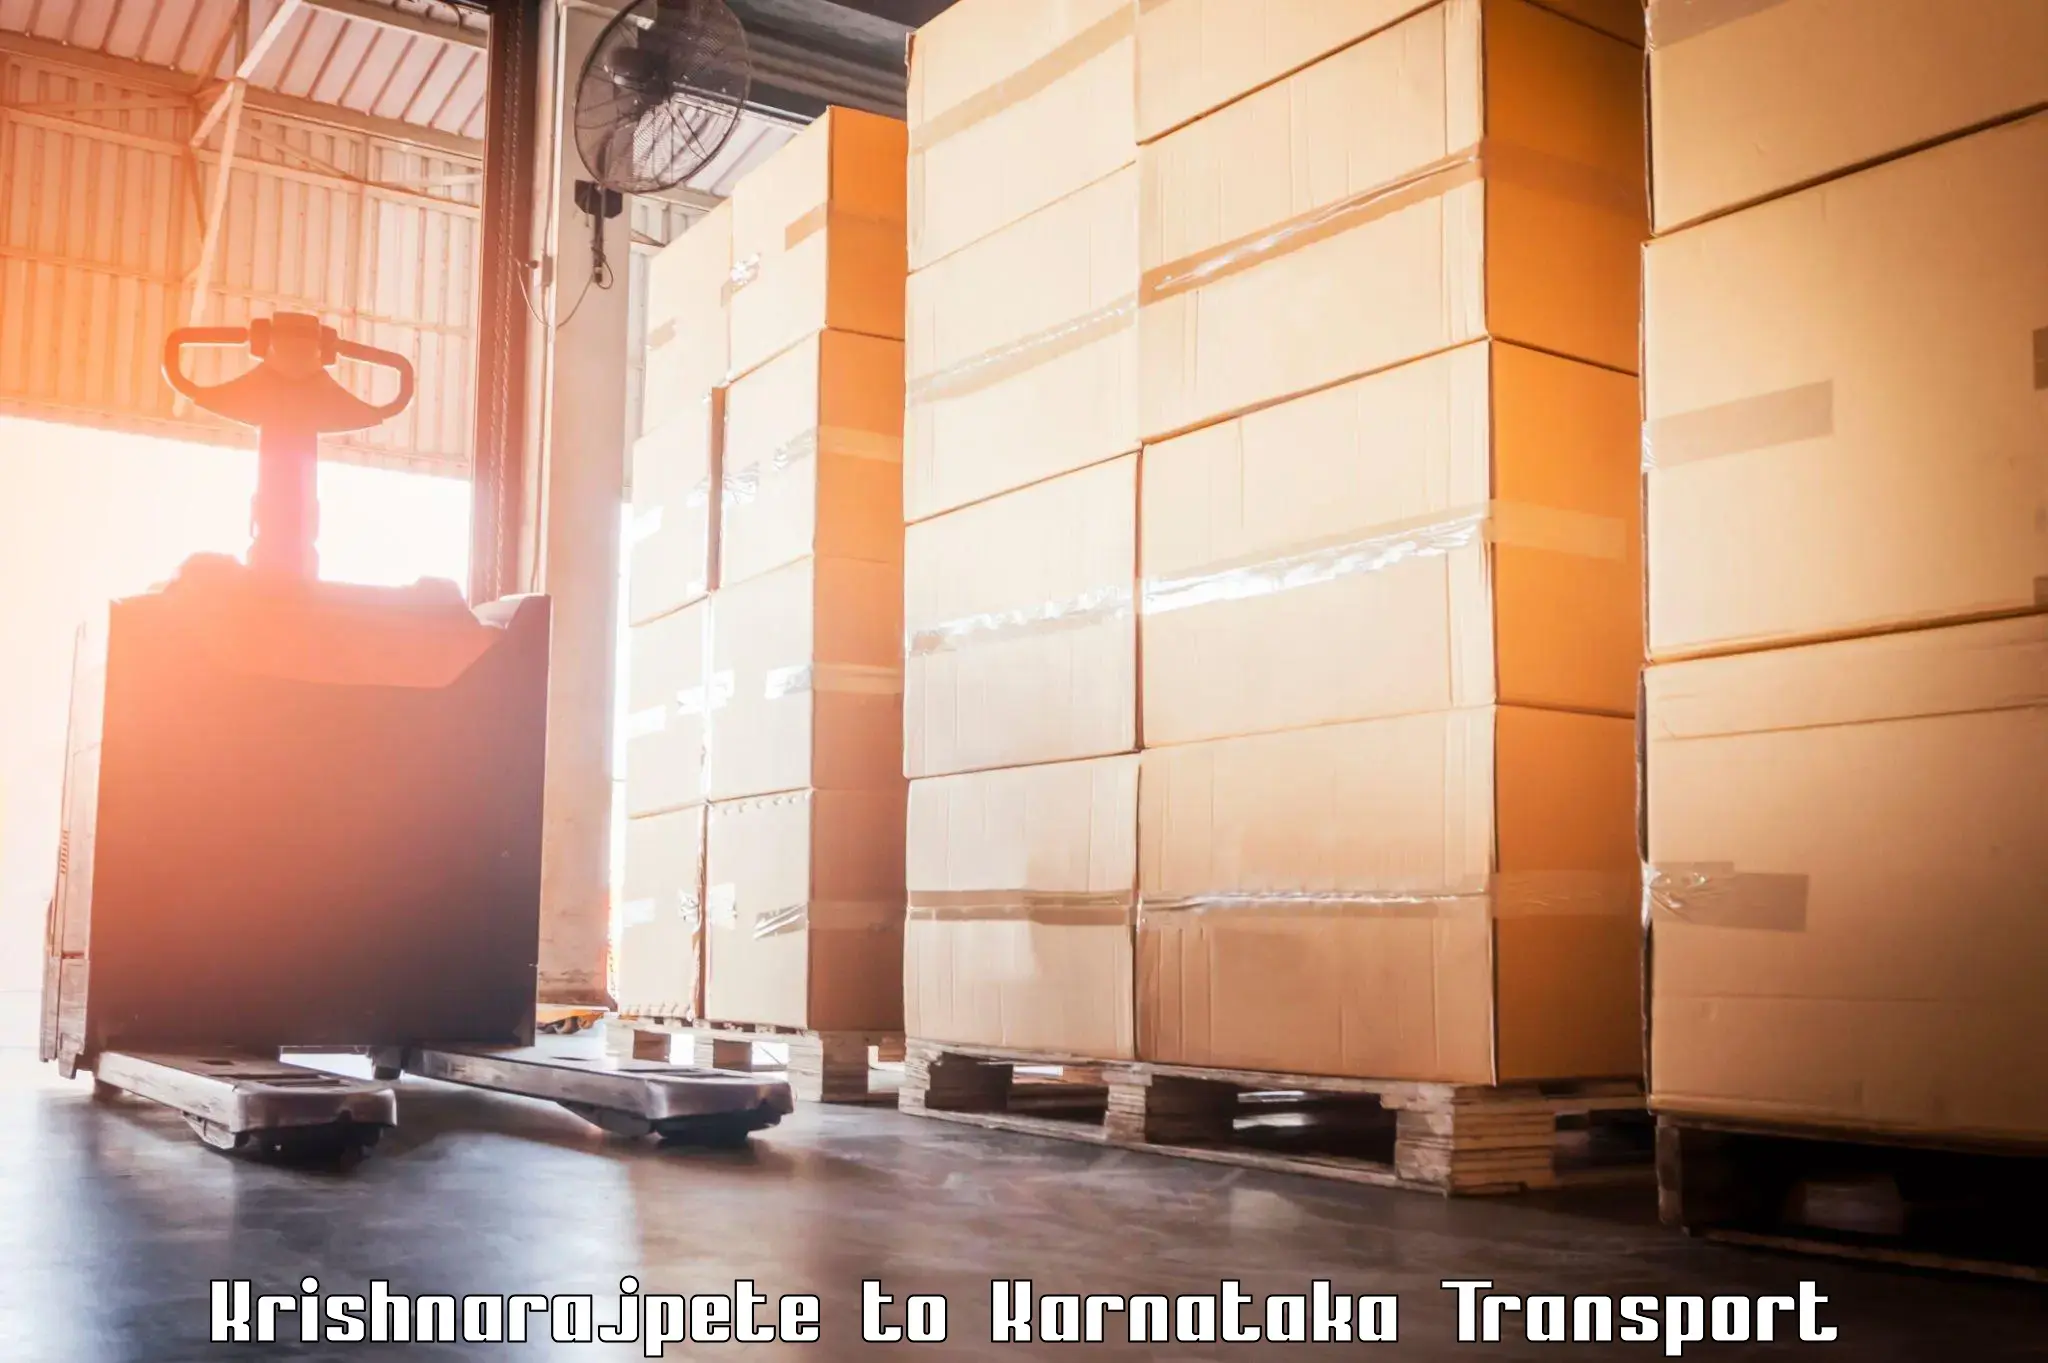 Logistics transportation services Krishnarajpete to Hubli